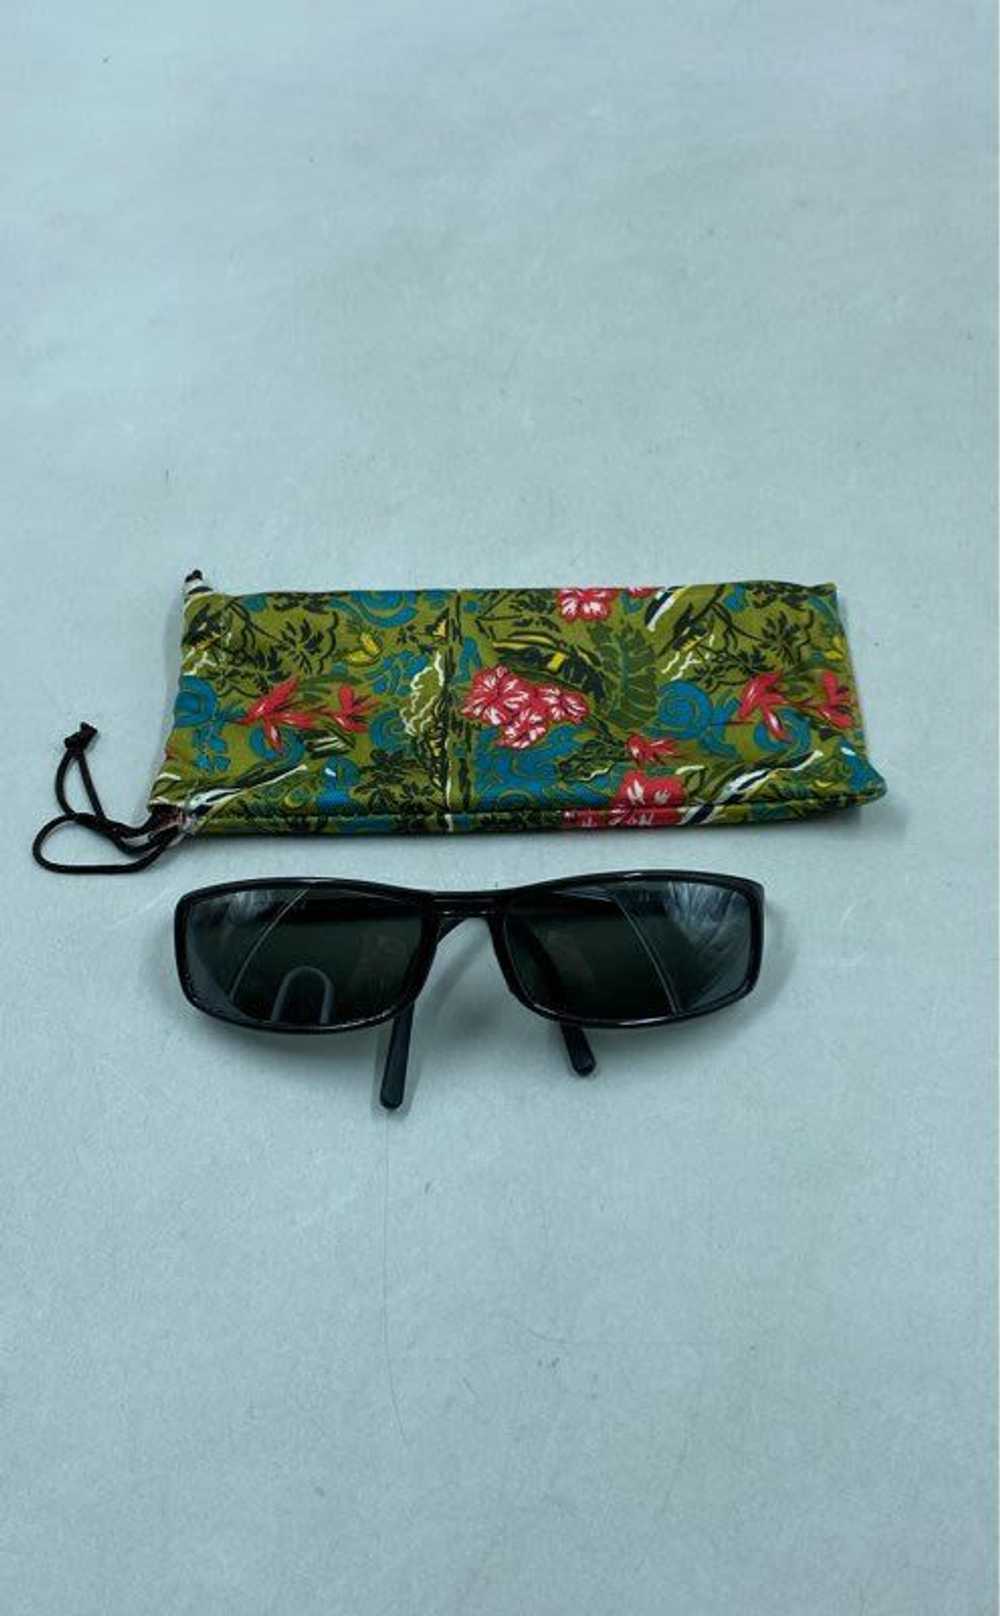 Maui Wear Maui Black Sunglasses - Size One Size - image 1